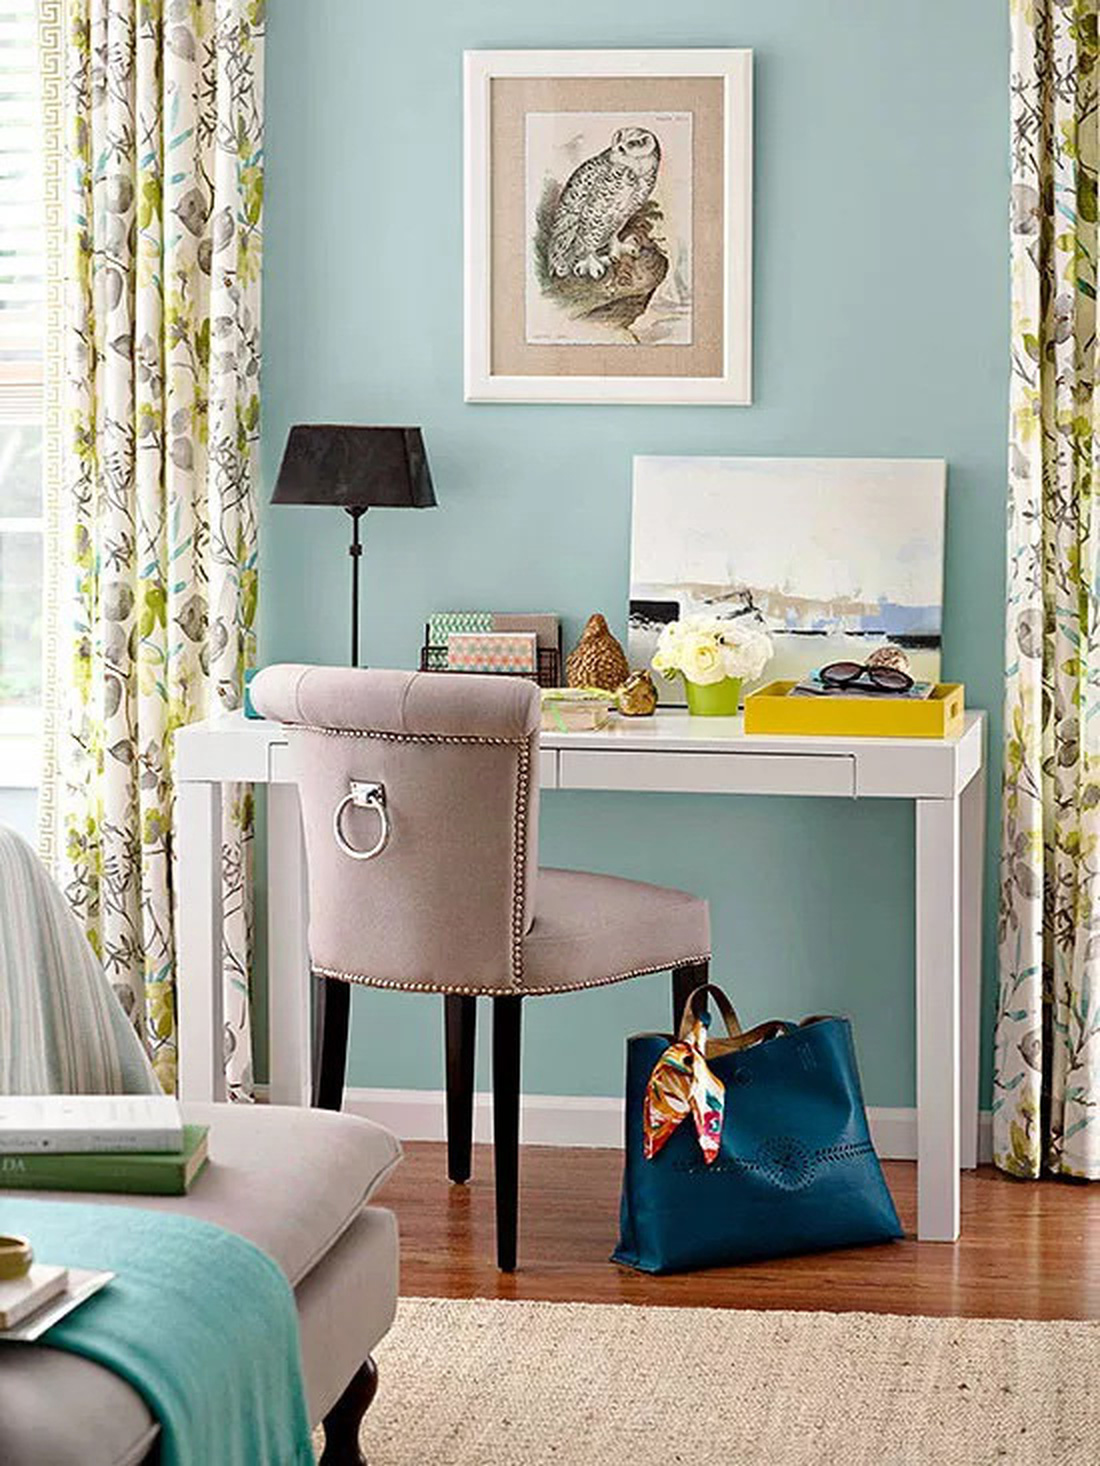 Bắt đầu với rèm hoặc vải bọc mà bạn thích và kết hợp màu tường và những sắc thái khác trong căn phòng - Ảnh: BHG